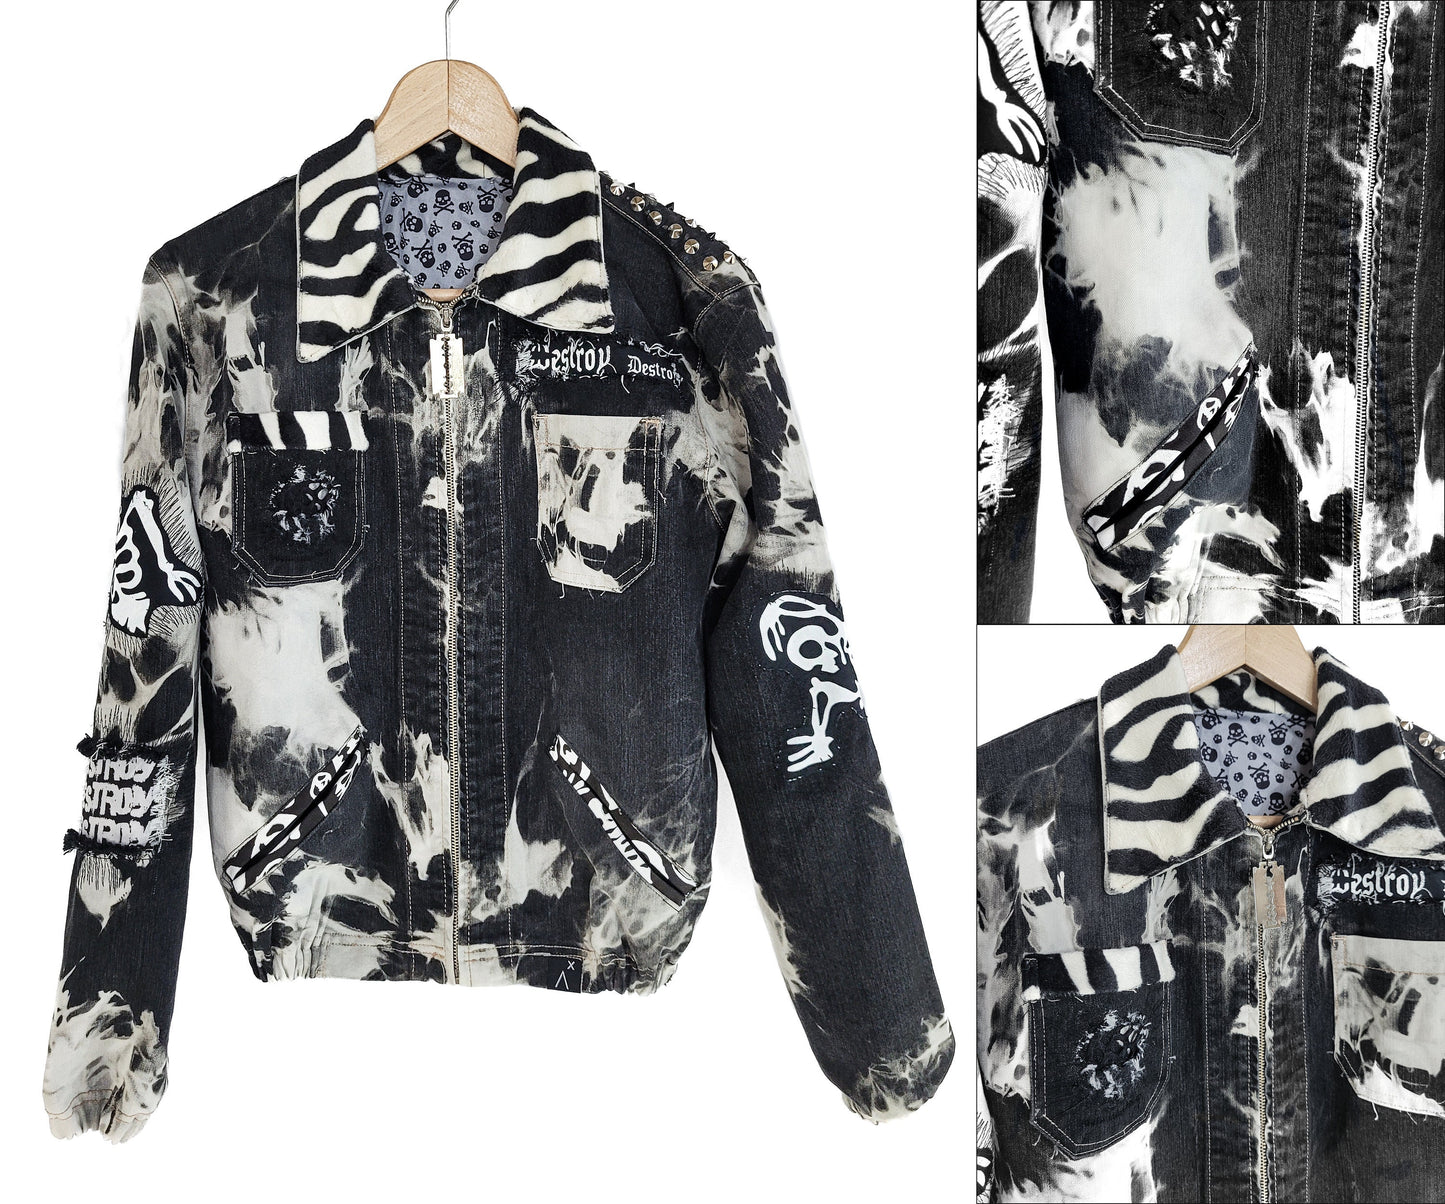 Skeleton jacket battle jacket goth jacket punk jacket custom jean jacket |unique jacket distressed jacket denim jacket jean jacket size M